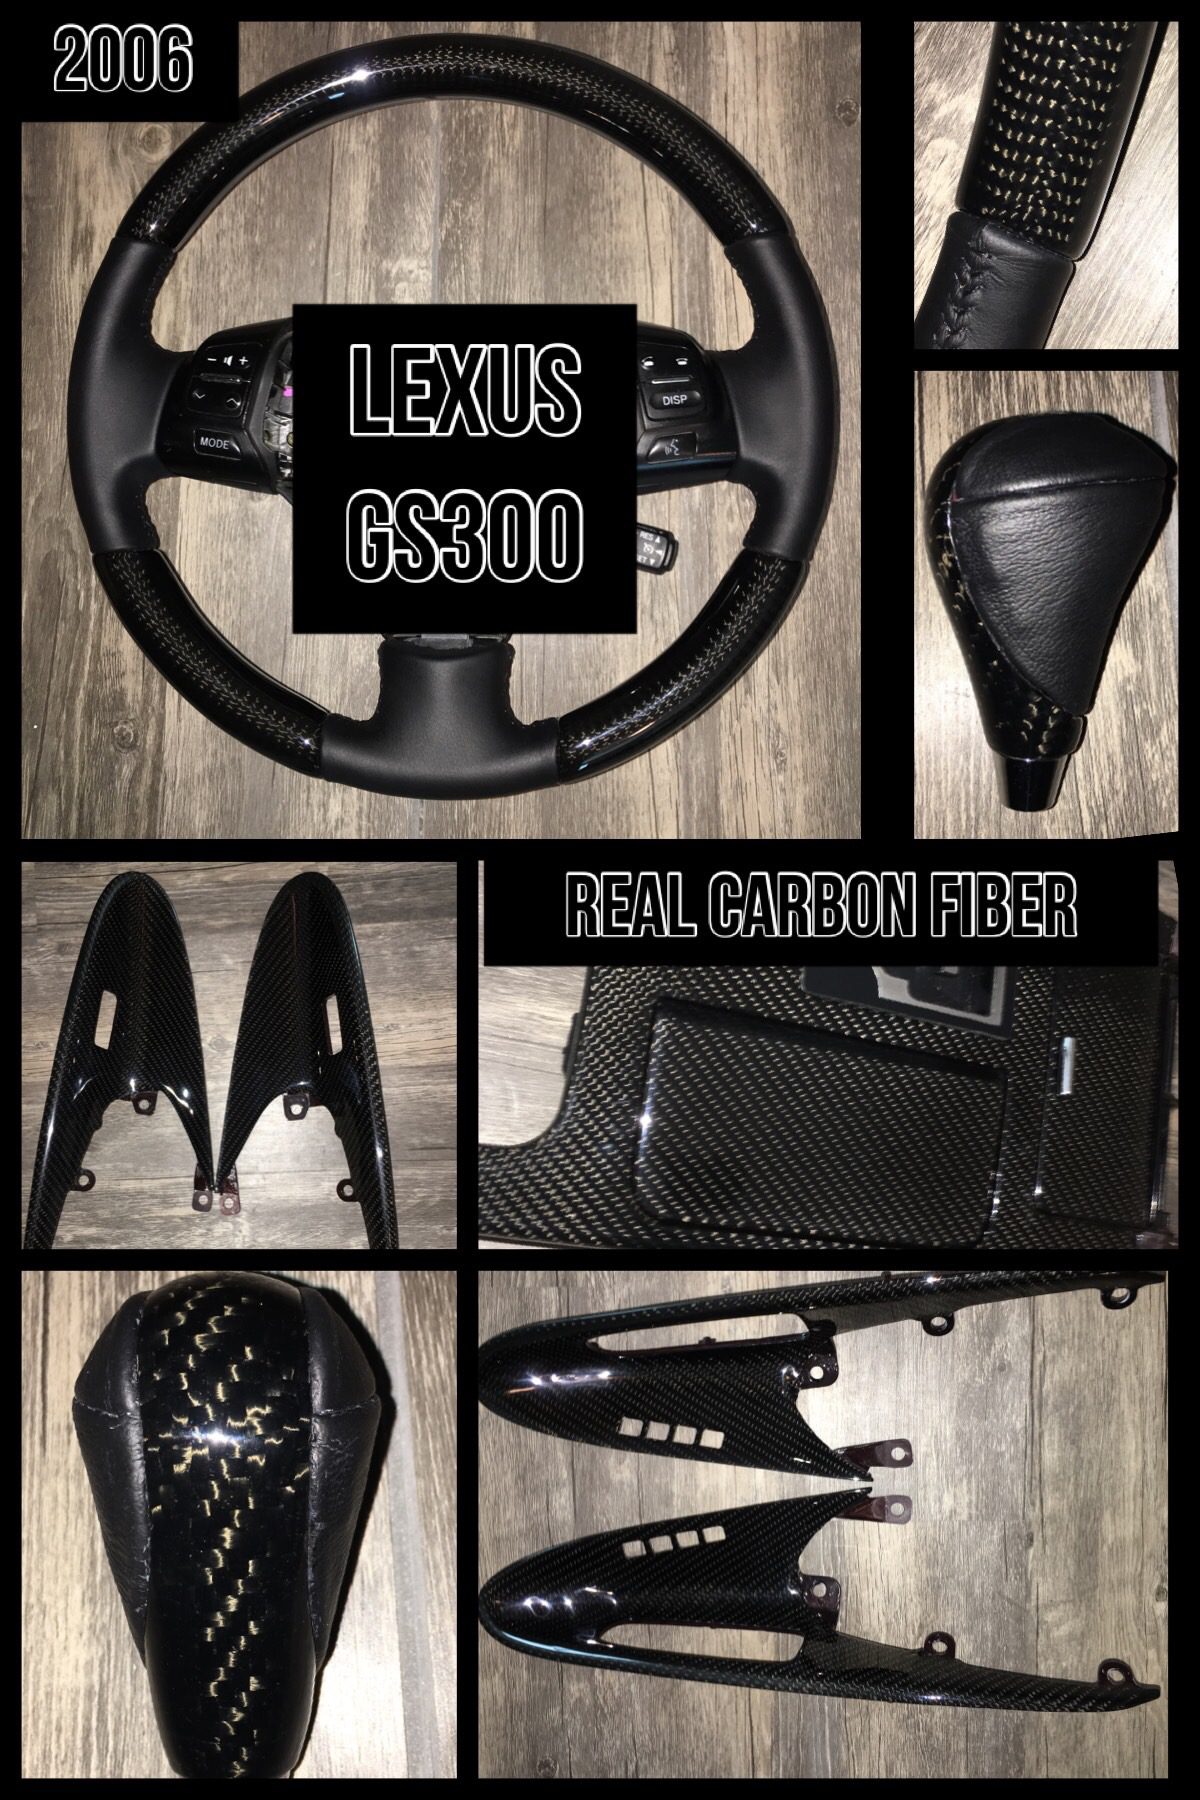 lexus gs300 carbon fiber trim steering wheel interior 1